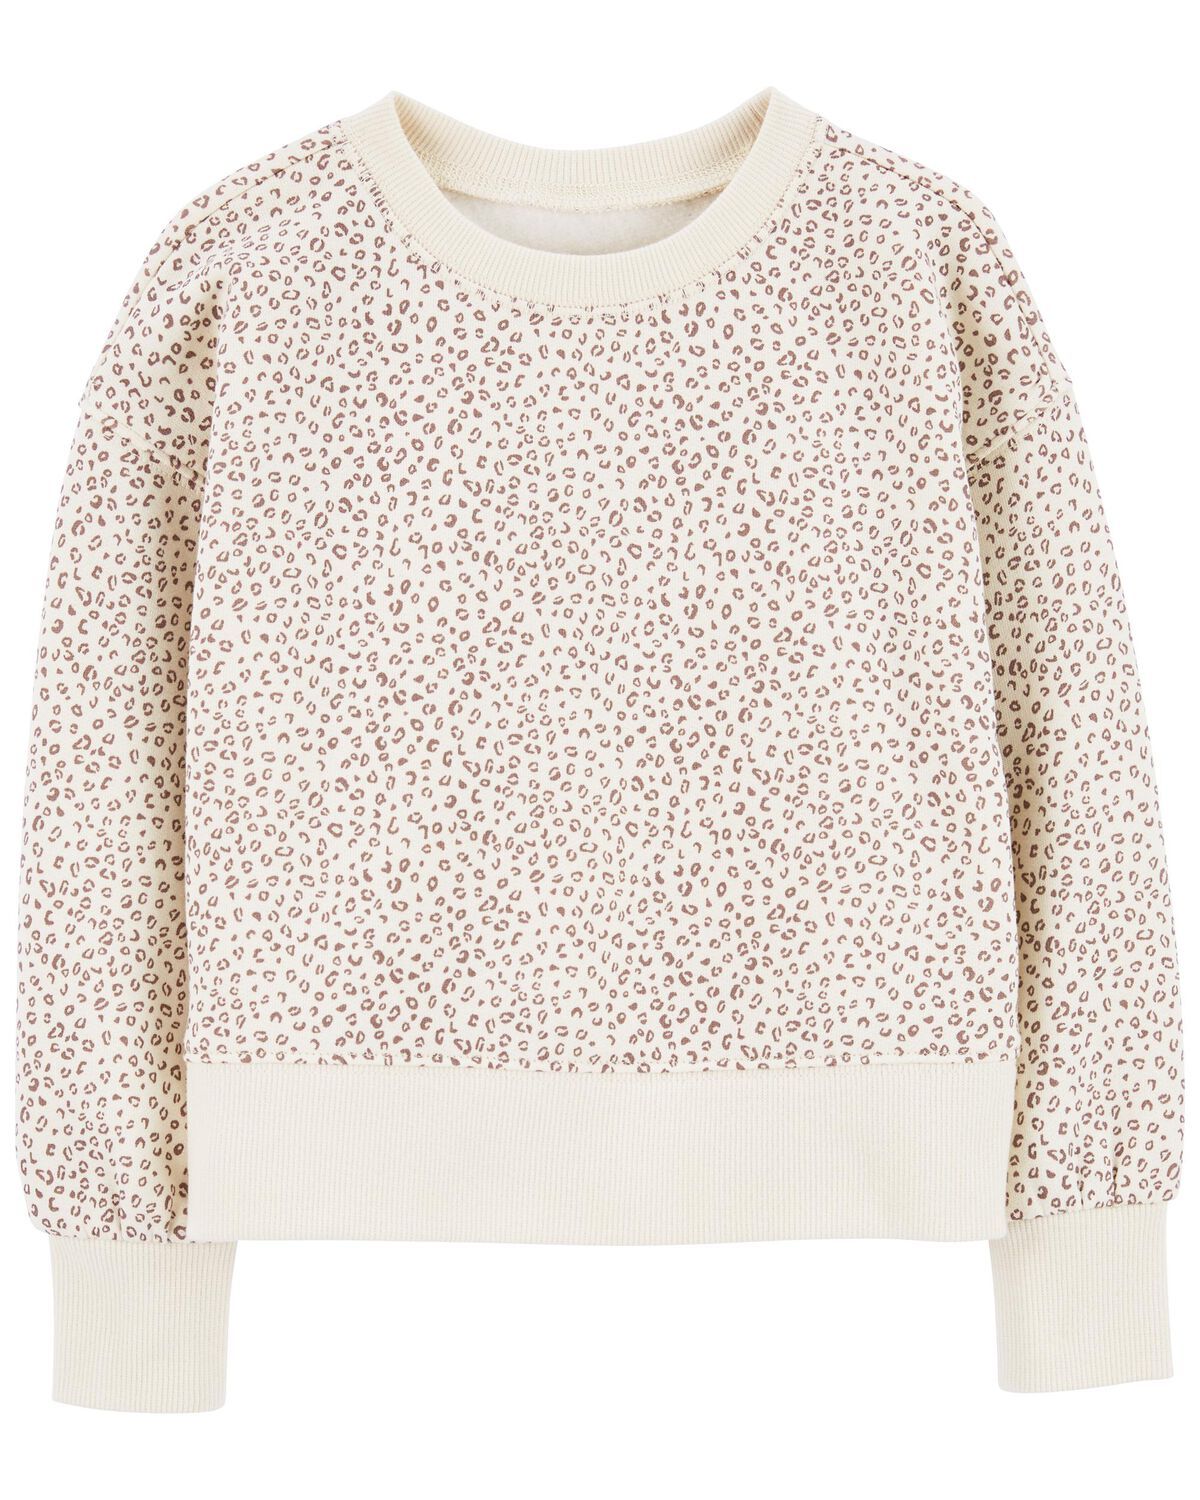 Ivory Baby Leopard Fleece Sweatshirt | carters.com | Carter's